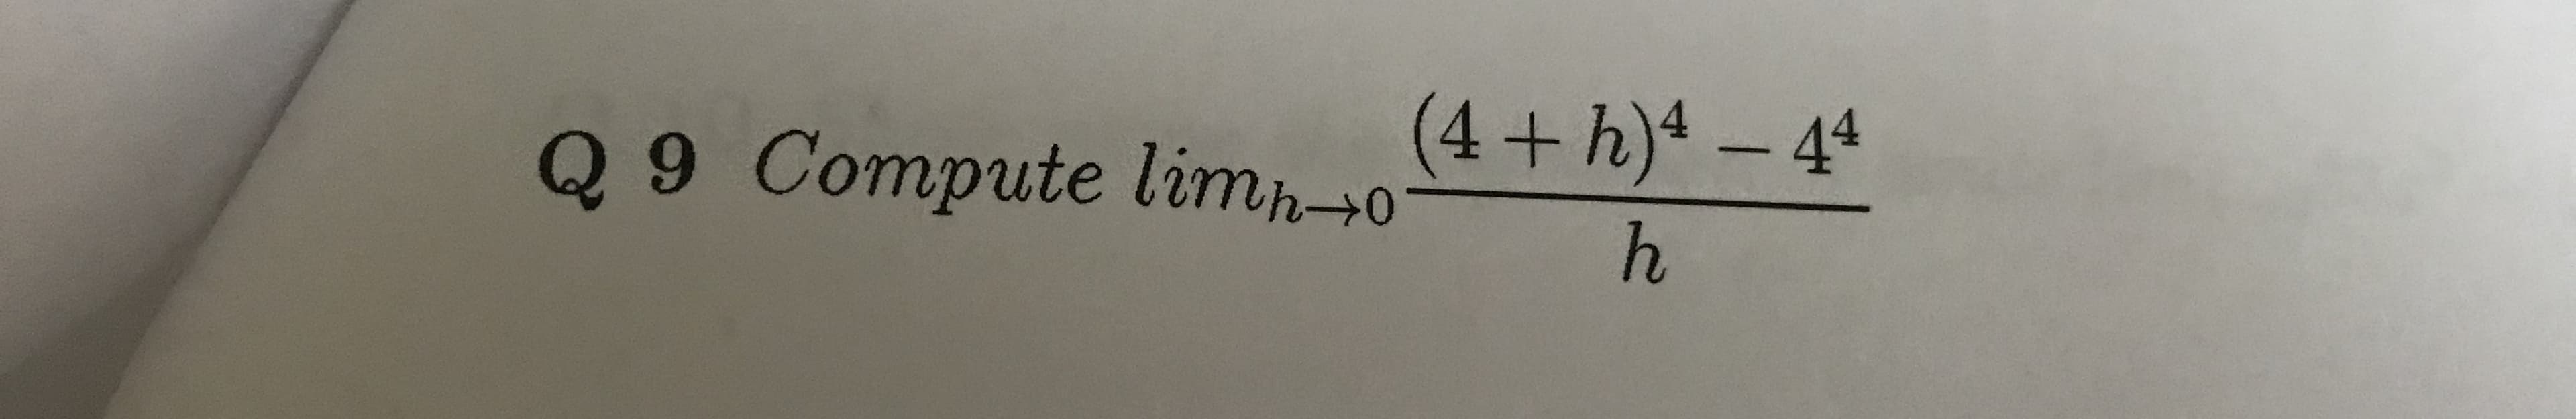 +h)4-44
Q 9 Compute limh-0
h
